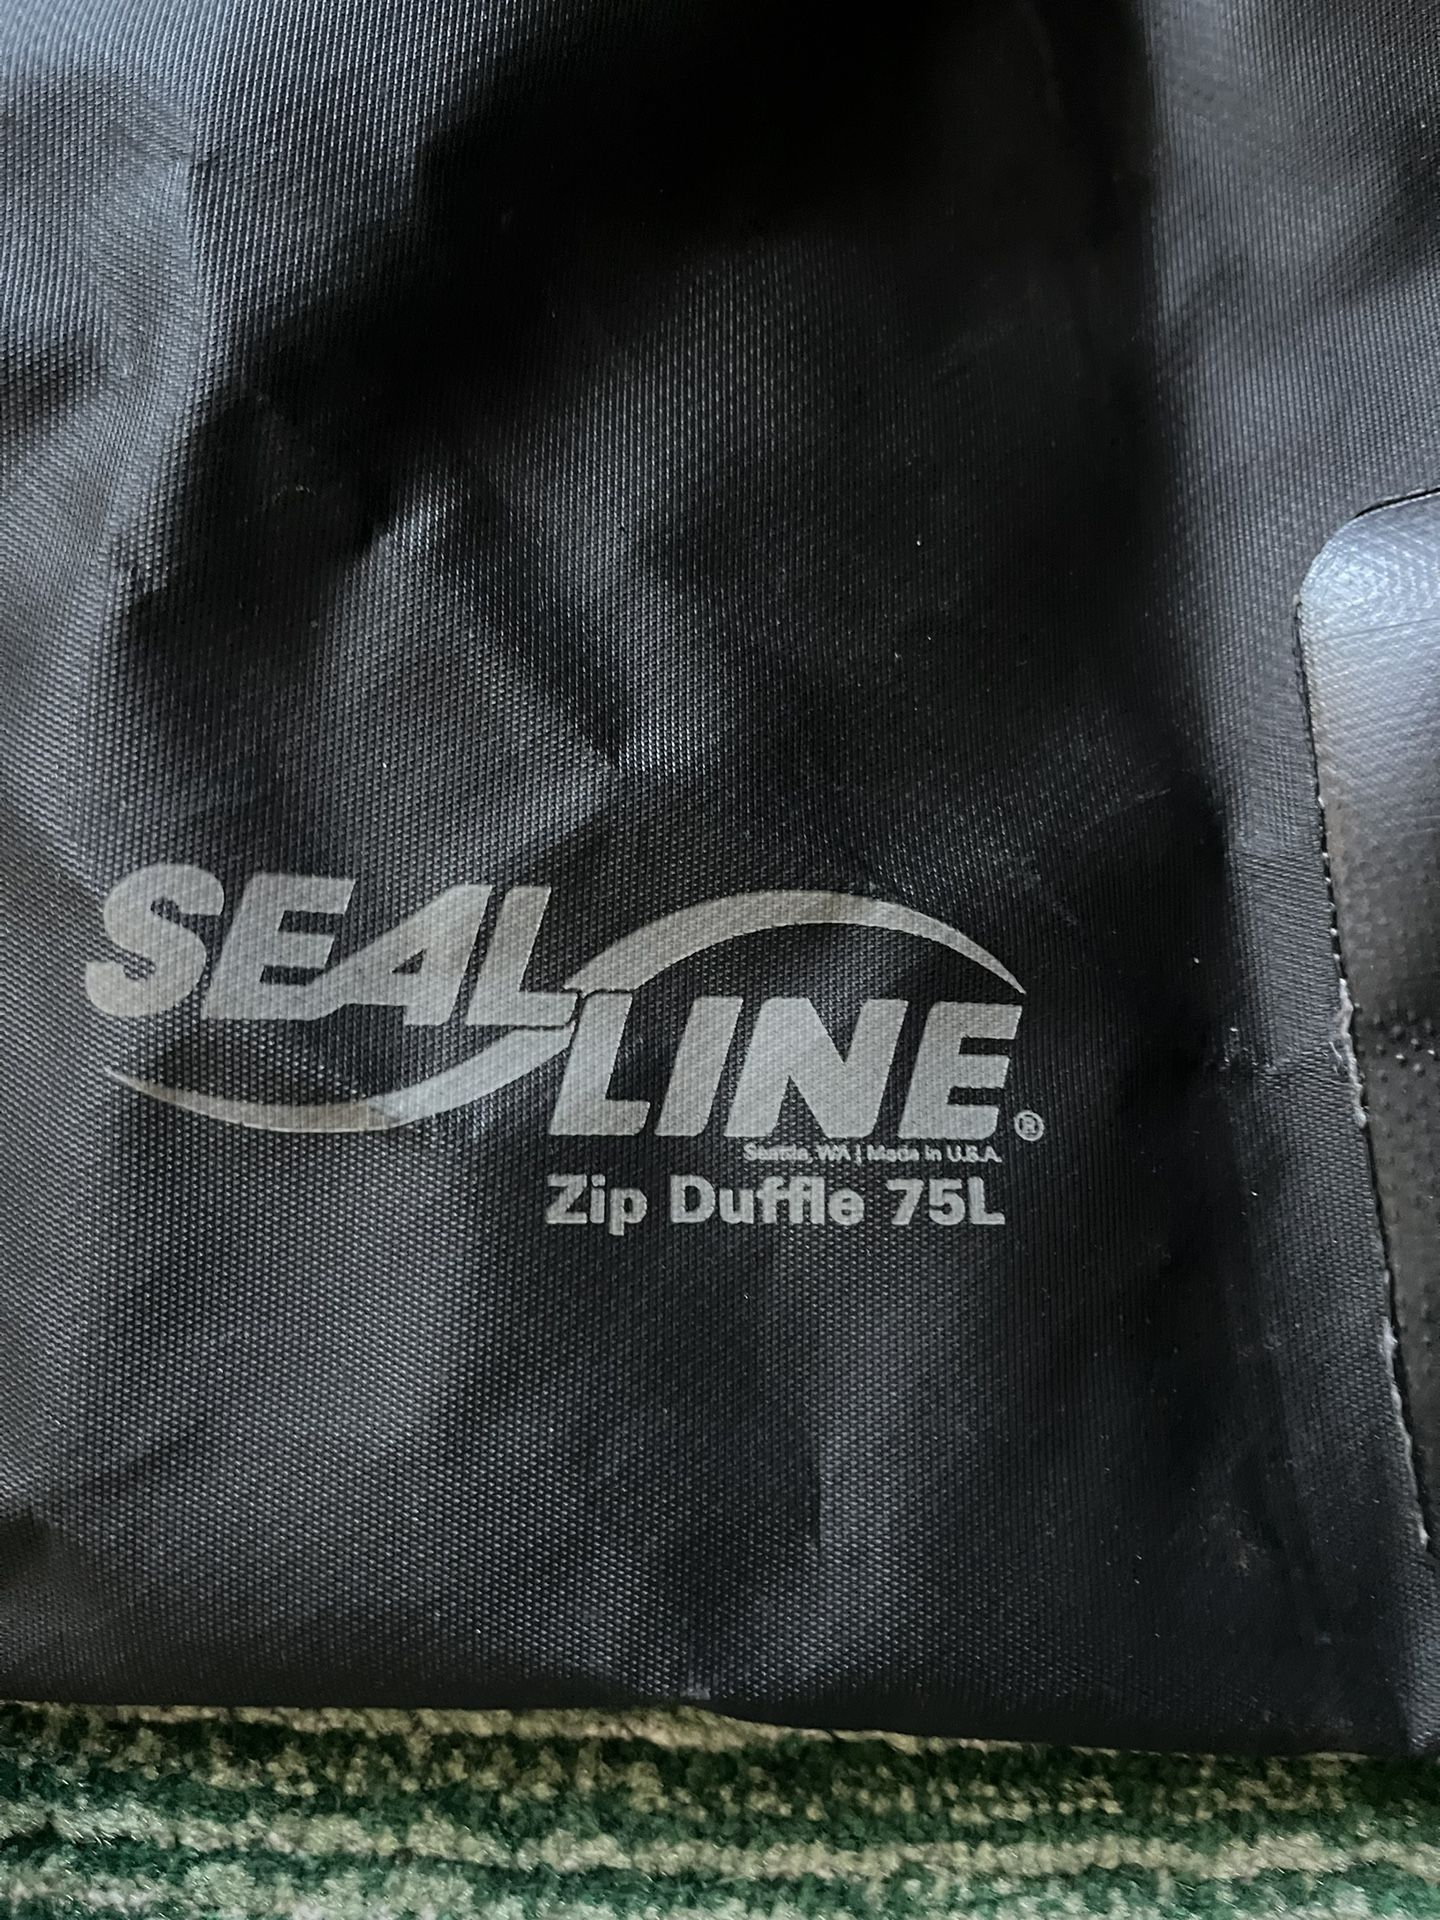 Seal-line Watertight Duffle Bag